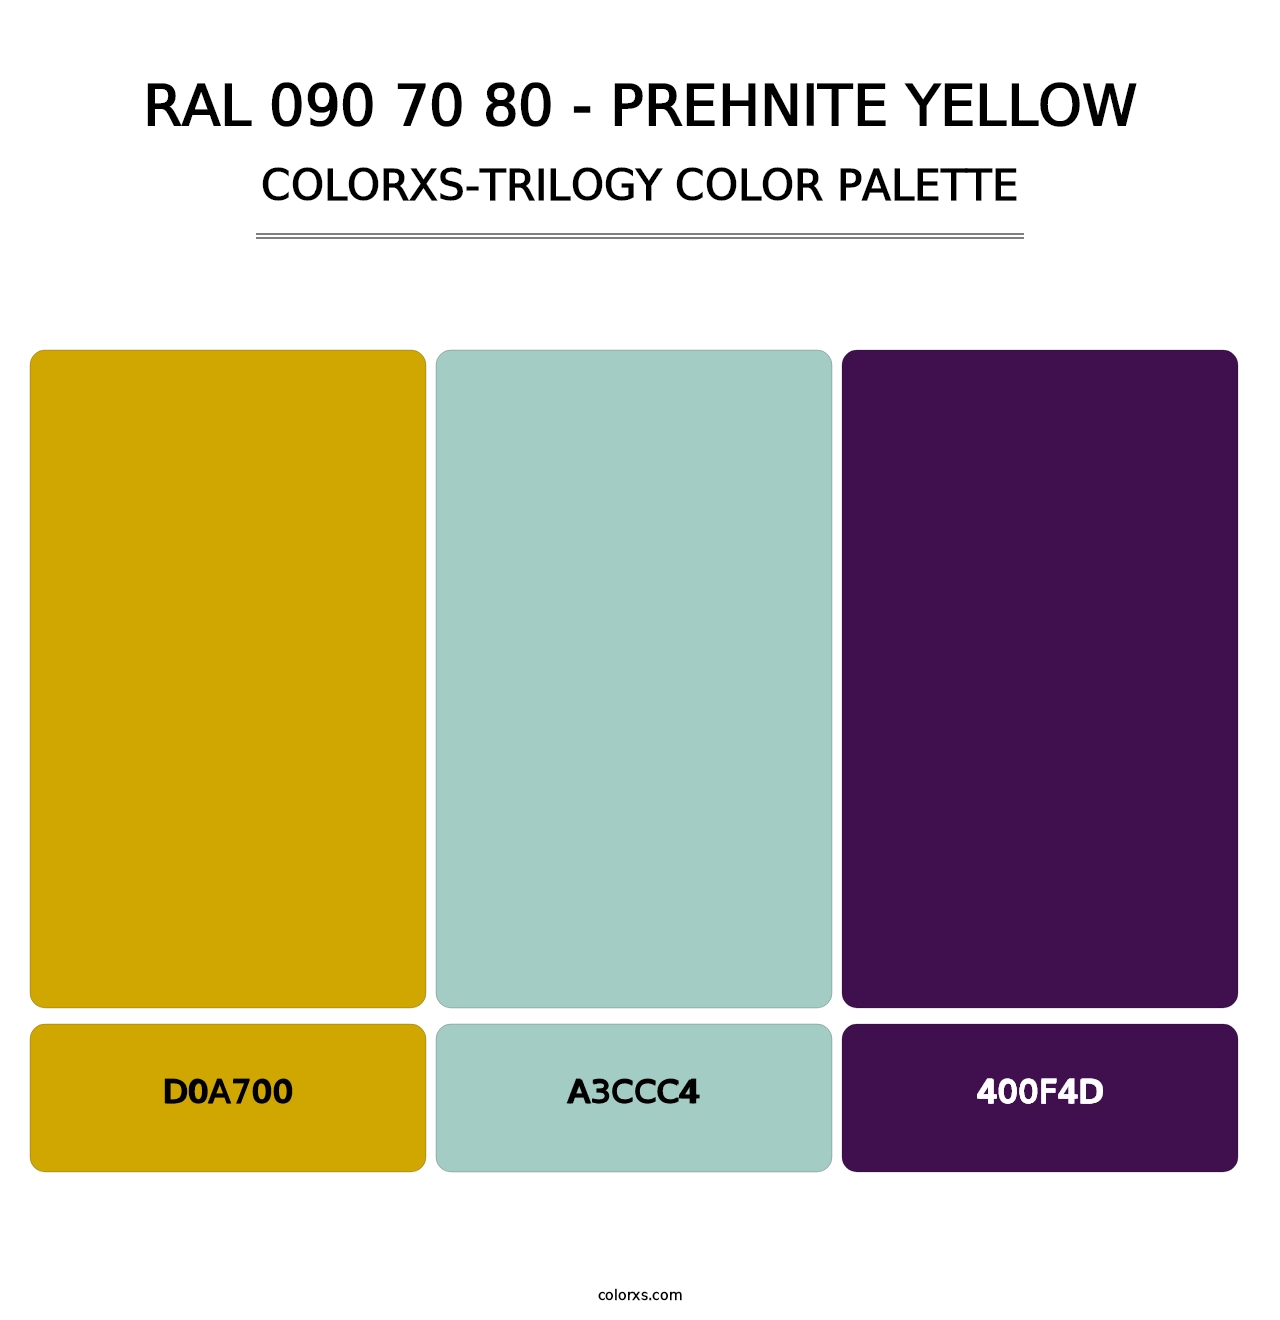 RAL 090 70 80 - Prehnite Yellow - Colorxs Trilogy Palette